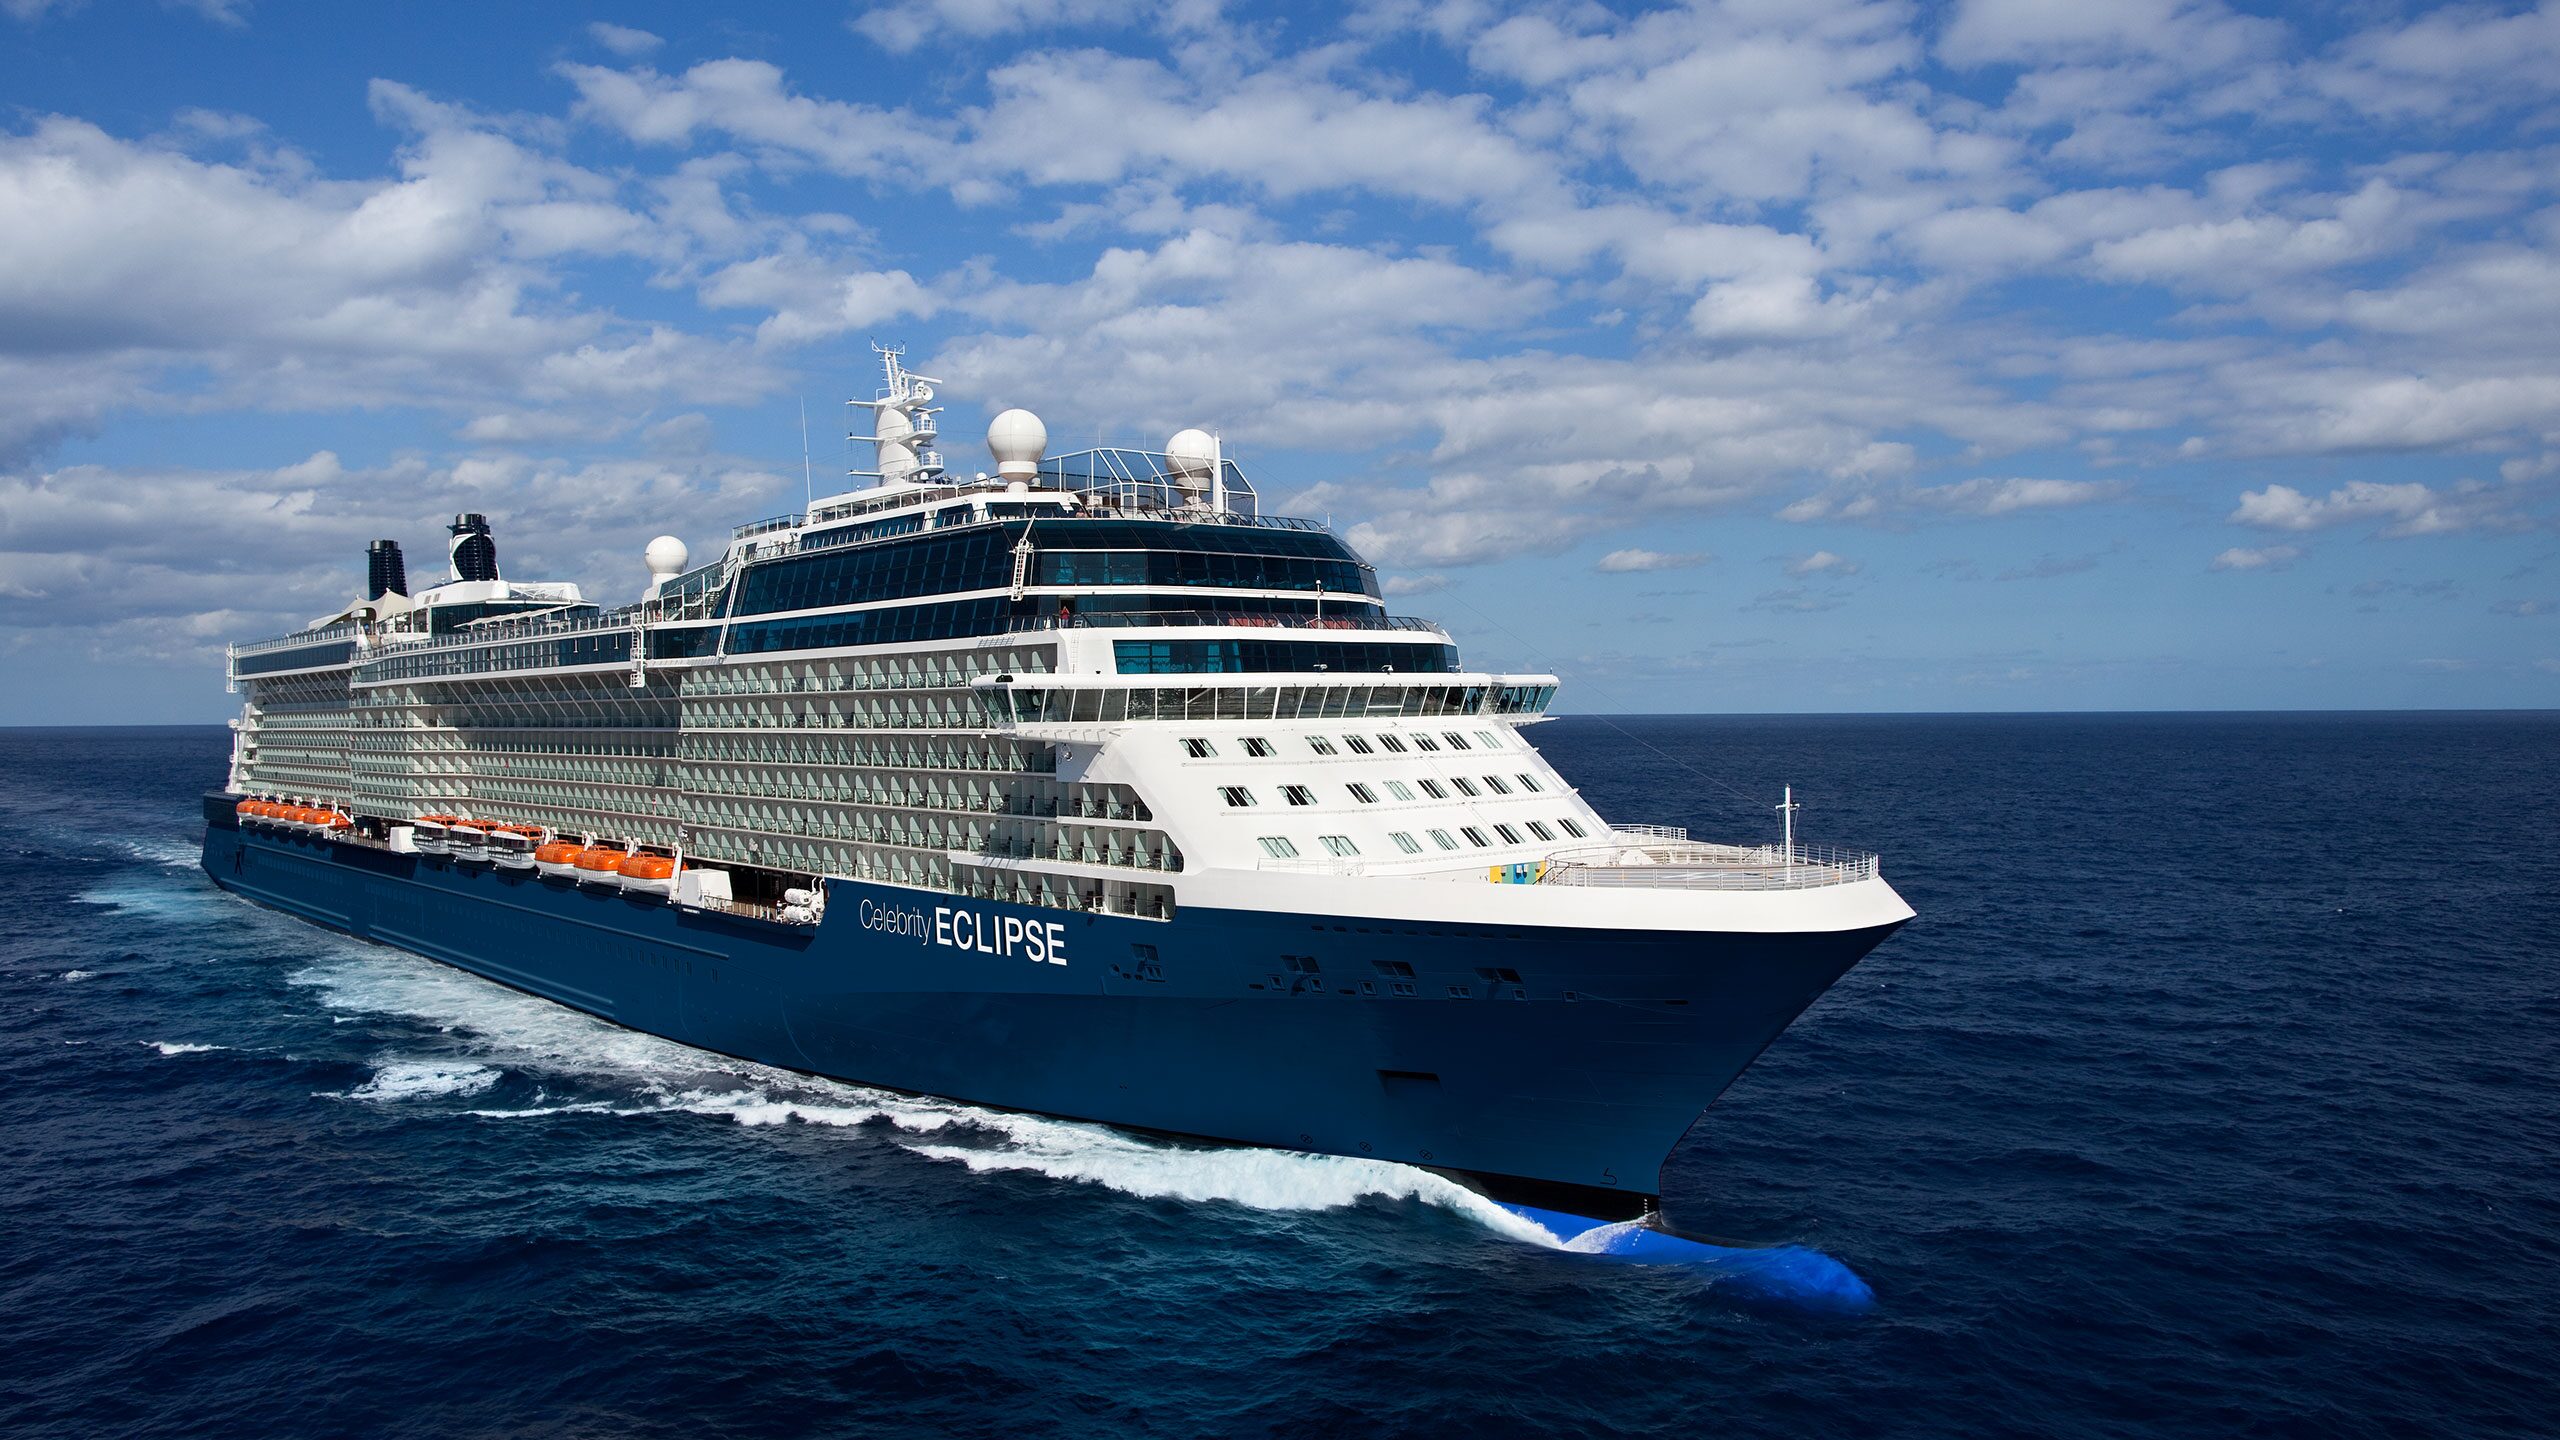 Australia & New Zealand Cruise Ships Celebrity Cruises